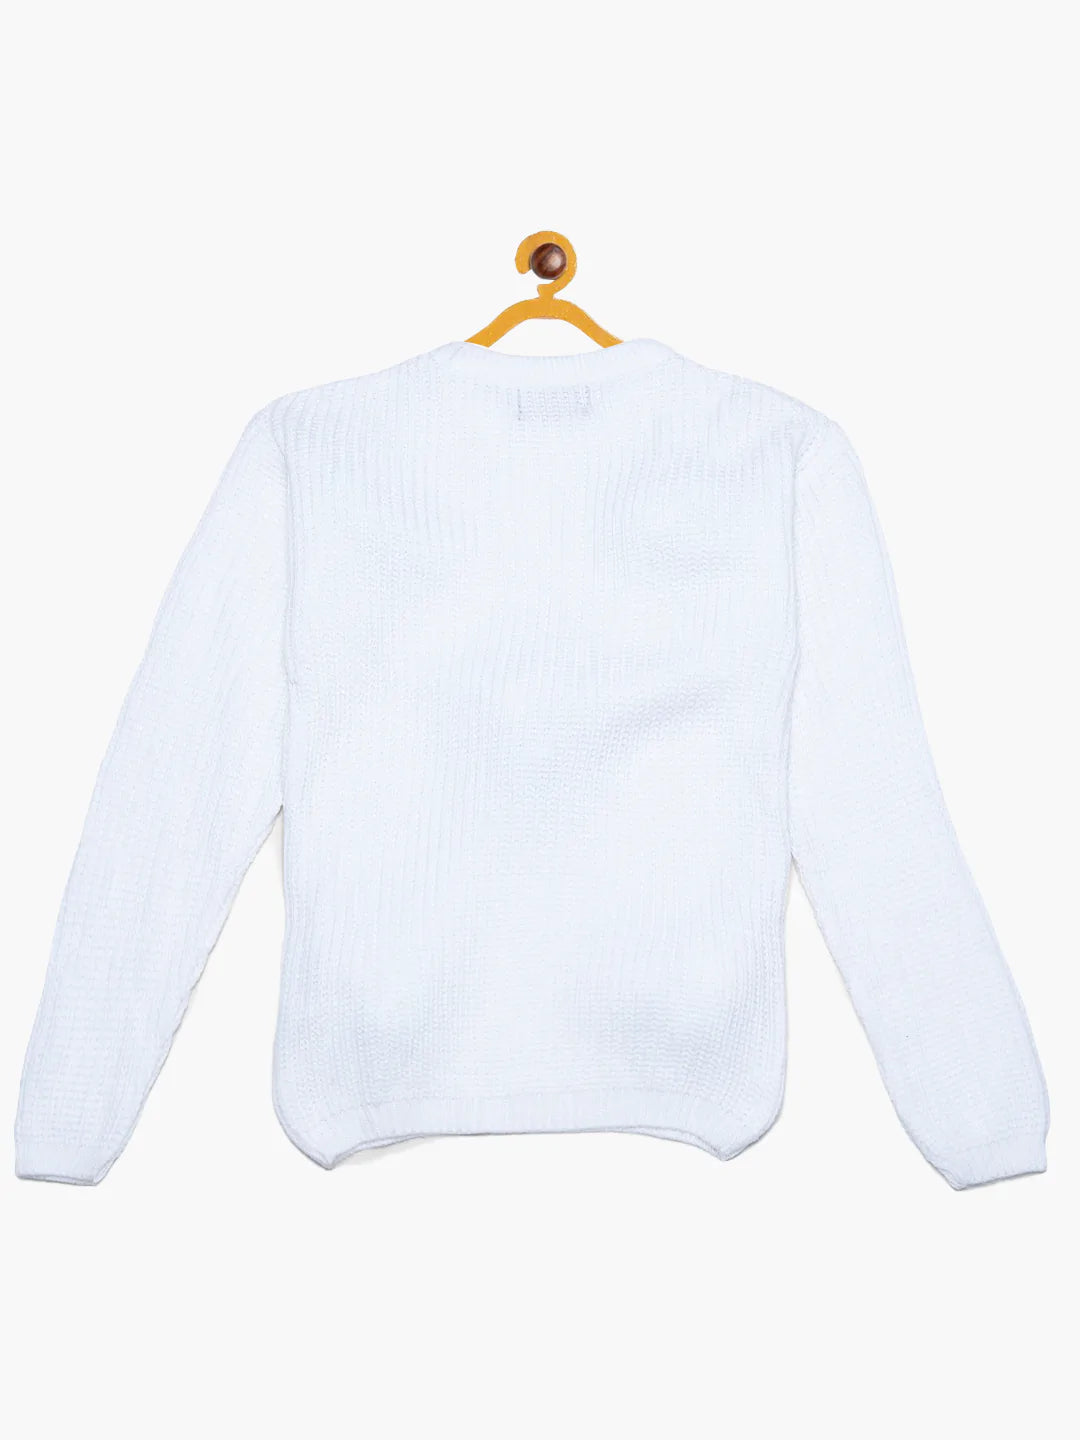  White Pom-Pom Sweater